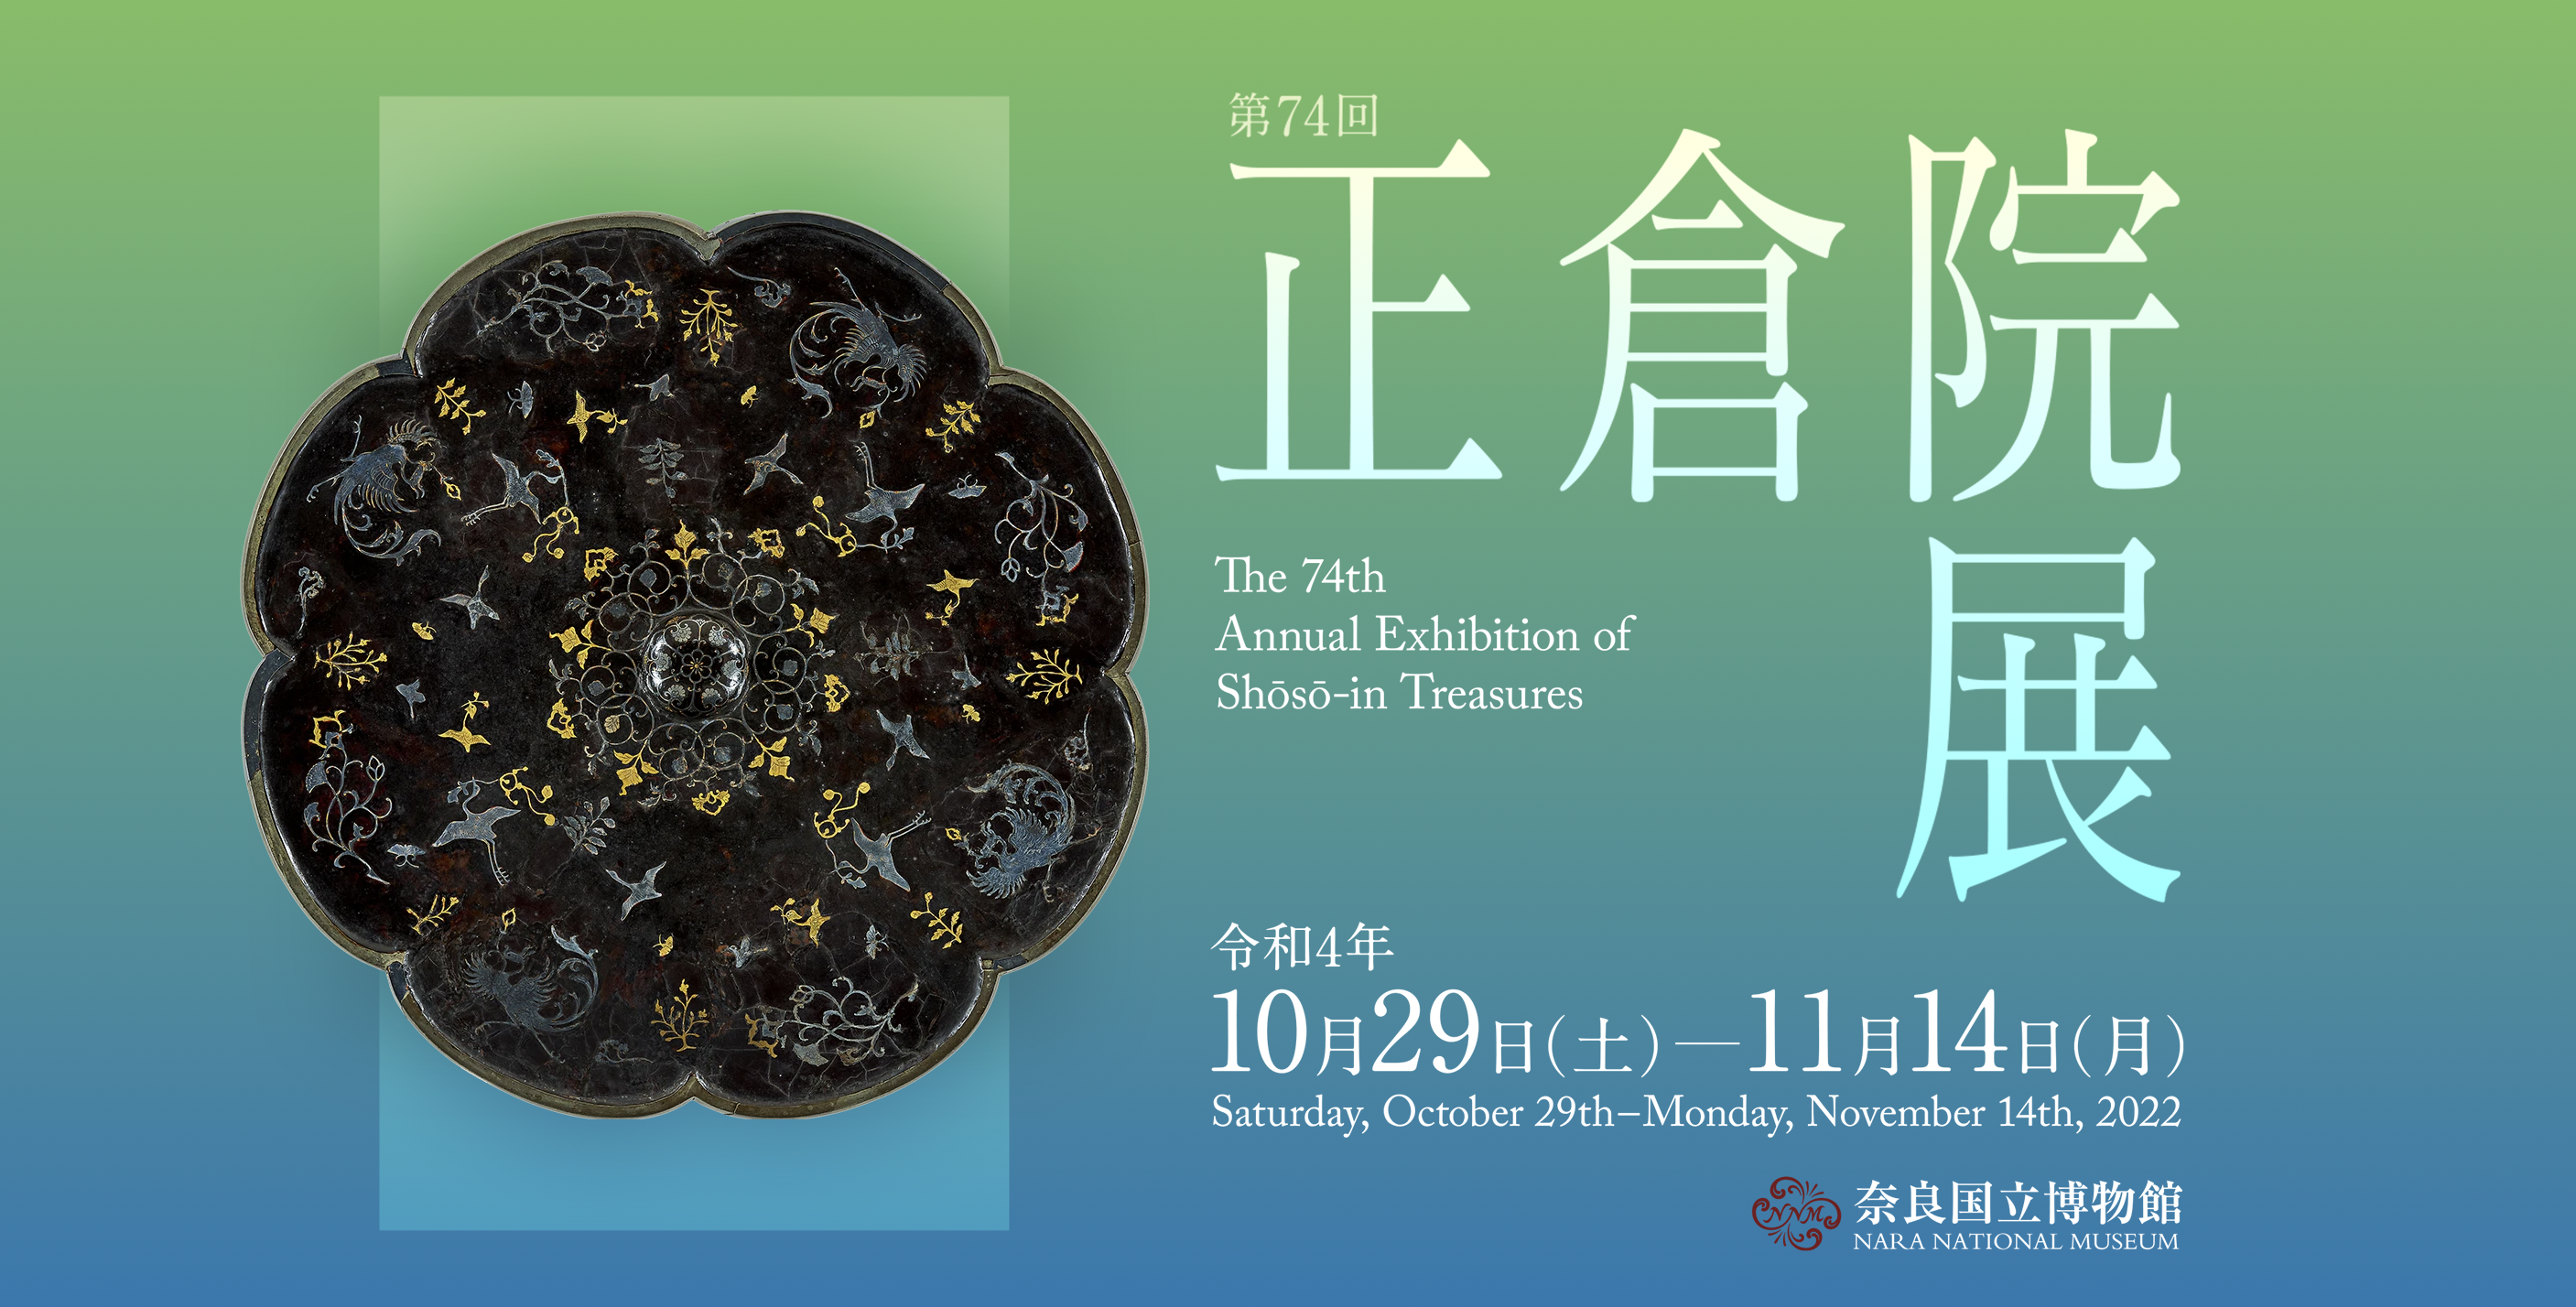 奈良国立博物馆官网海报